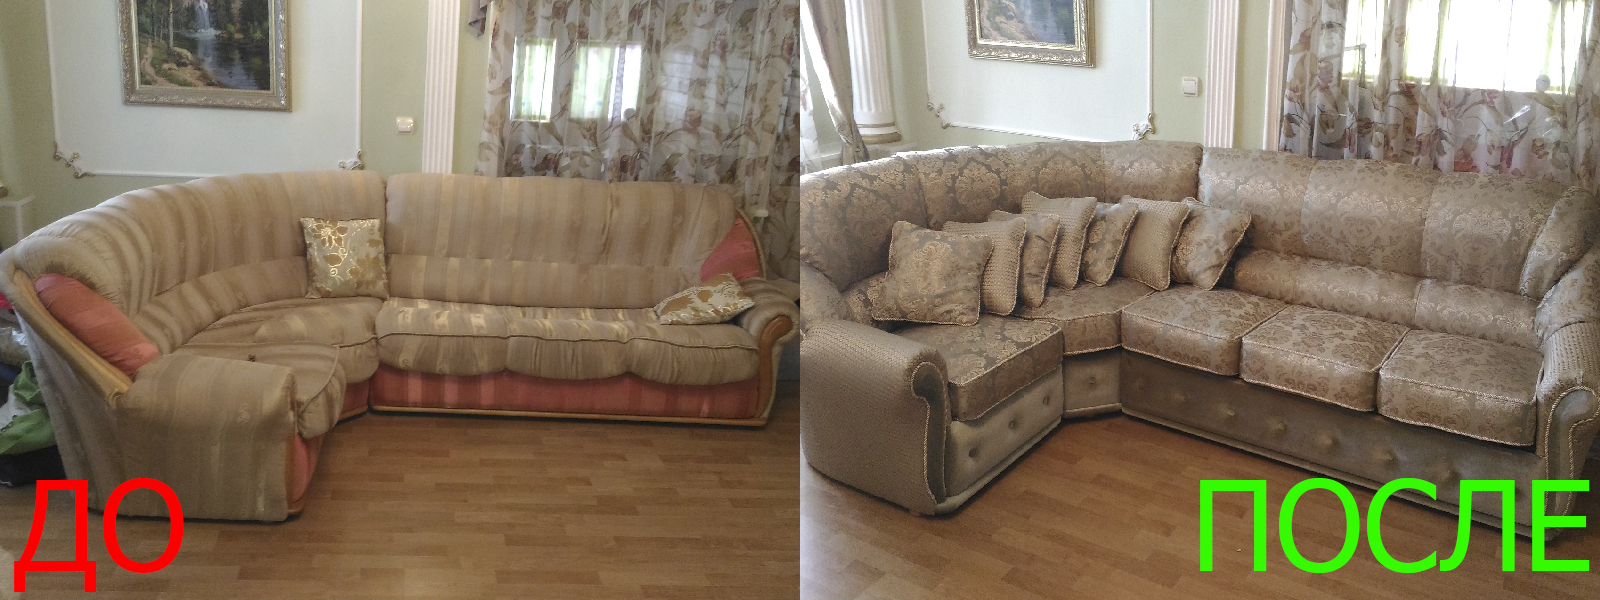 Обтяжка углового дивана в Казани разумные цены на услуги, опытные специалисты